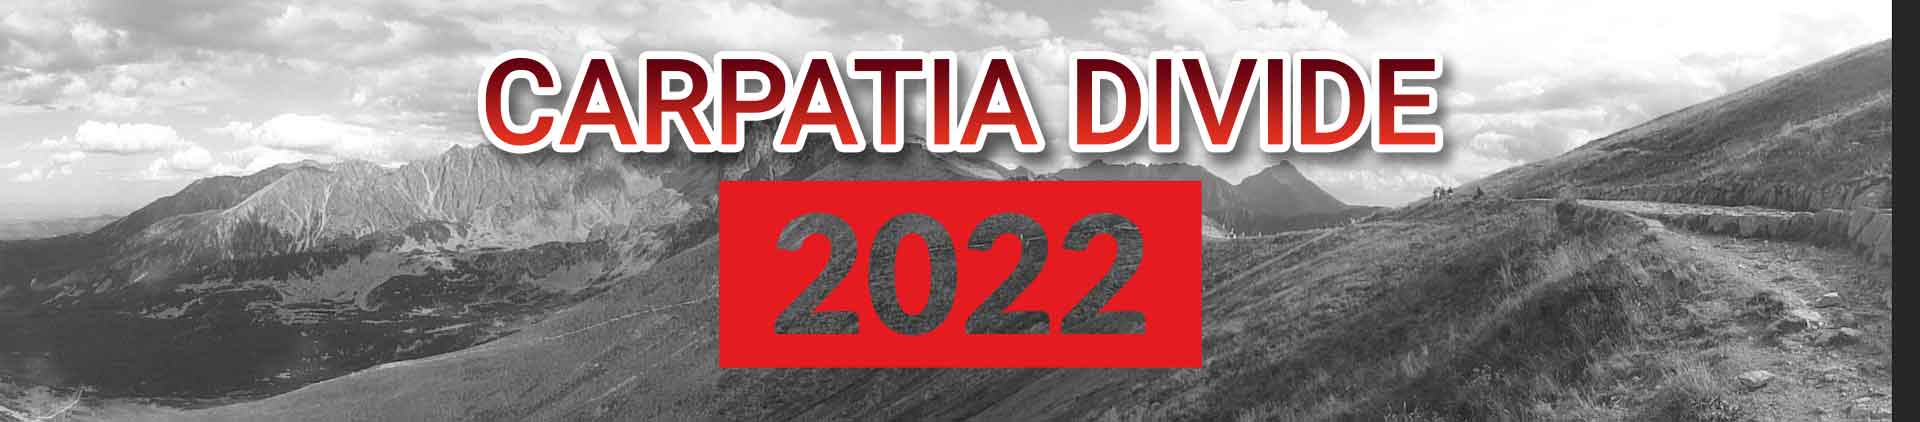 Carpatia Divide 2022 - Das Event